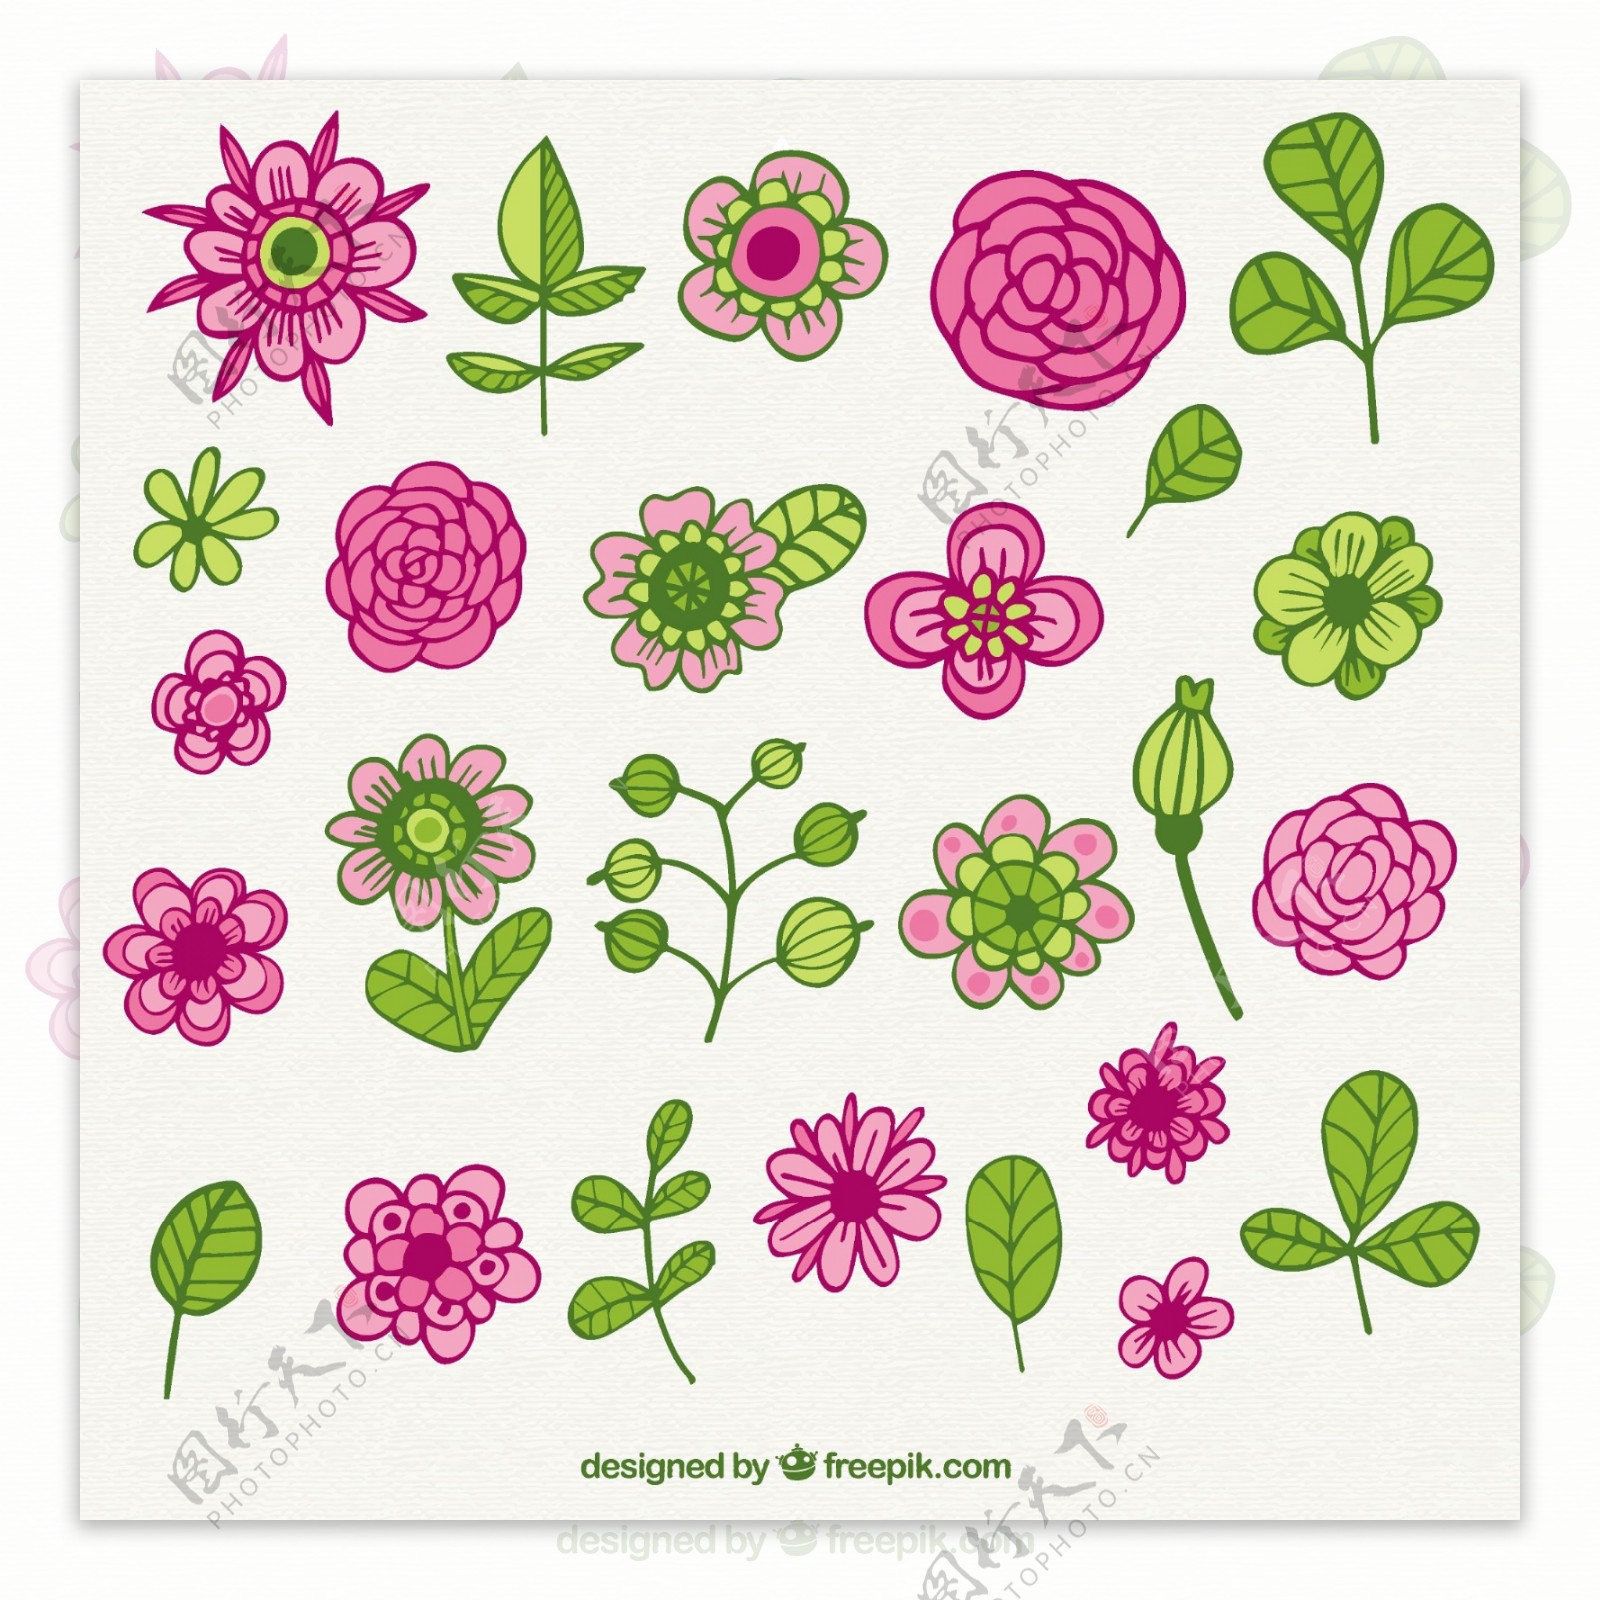 可爱的花在绿色和粉红色的色调收藏